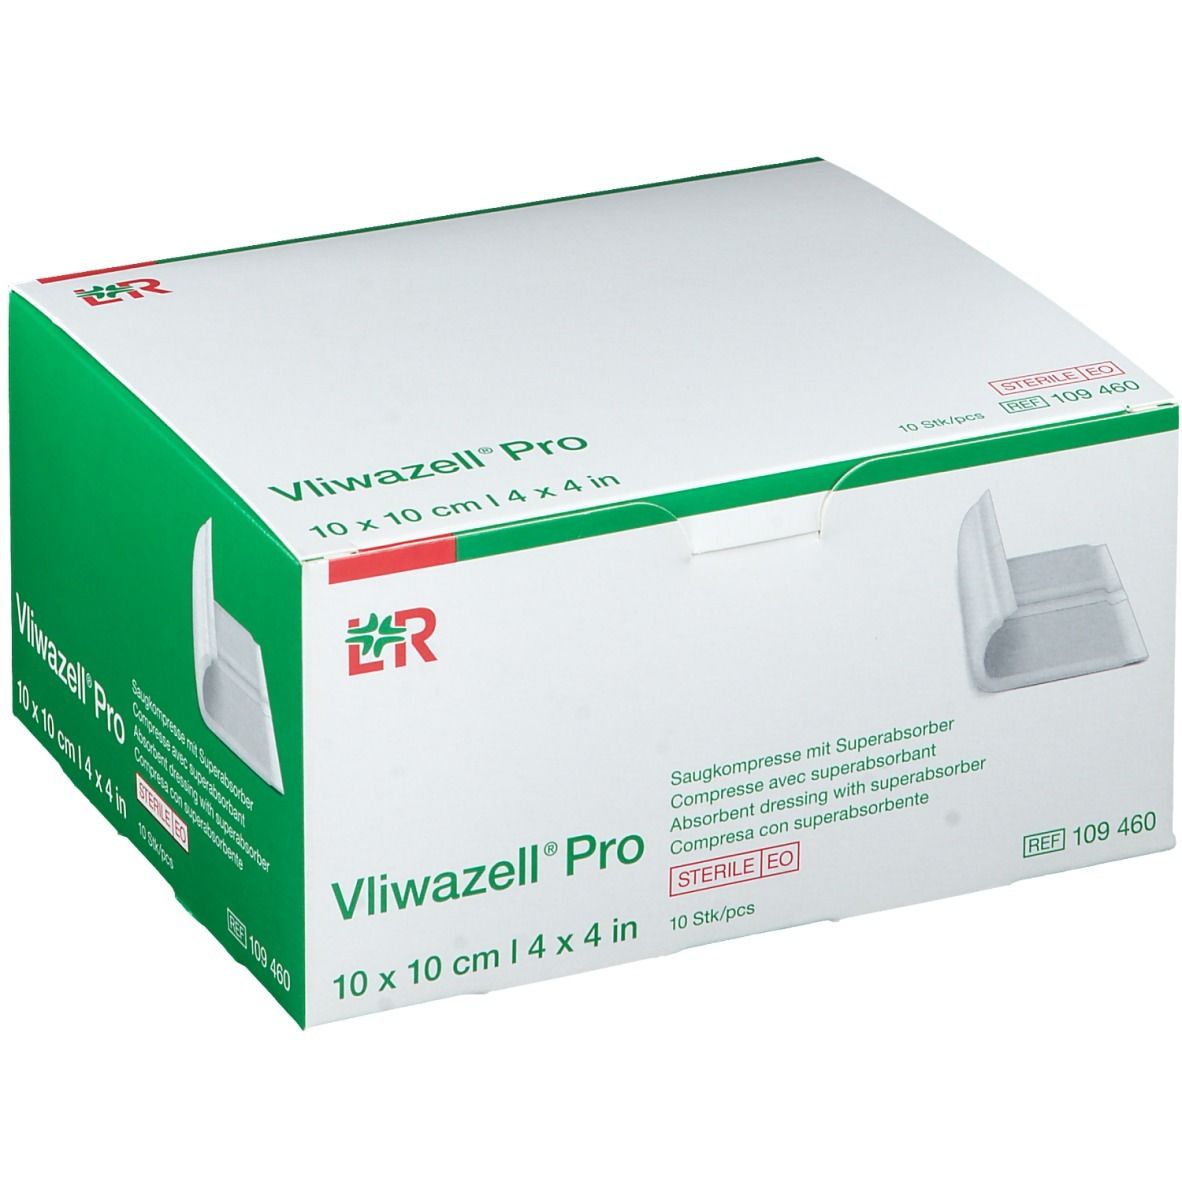 Vliwazell® Pro 10 x 10 cm